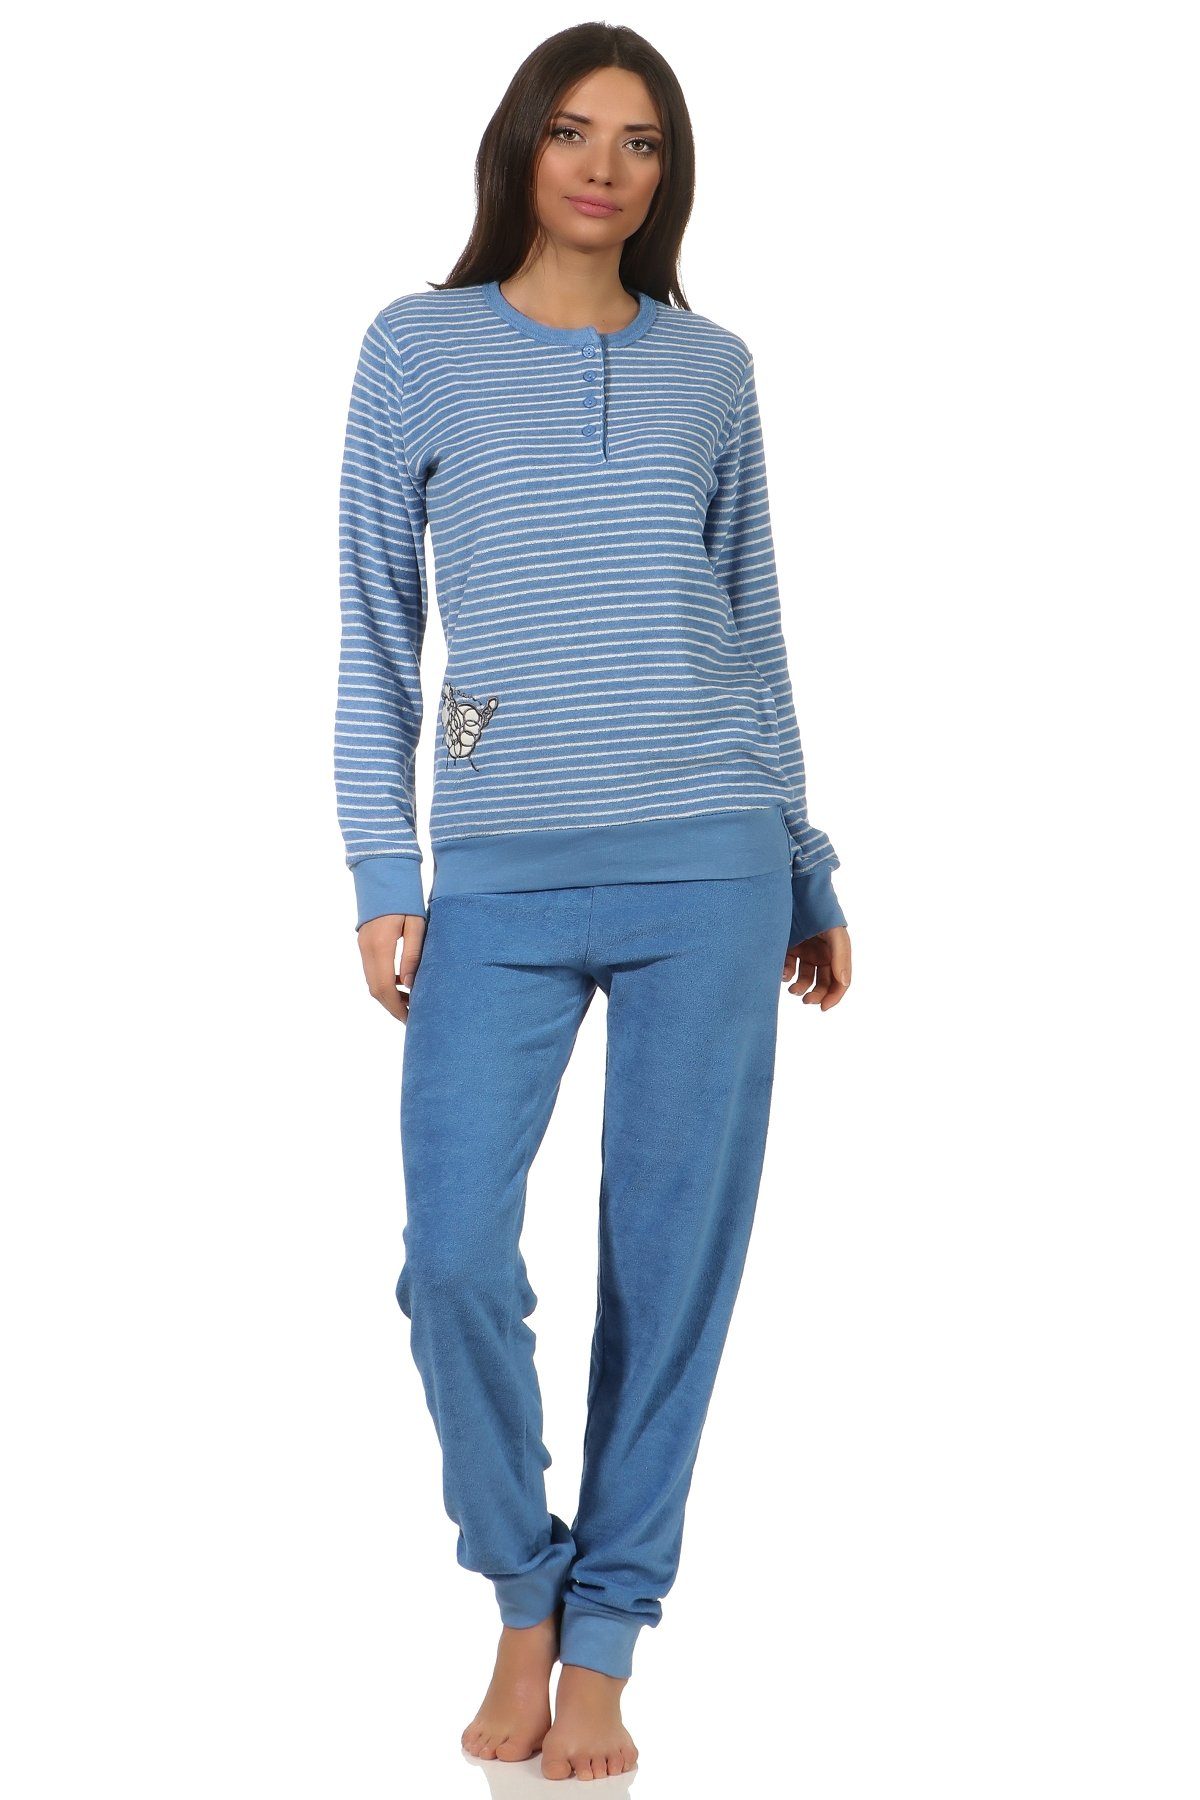 hellblau Tier und Normann Applikation Pyjama Damen Frottee Schlafanzug mit Bündchen süsser